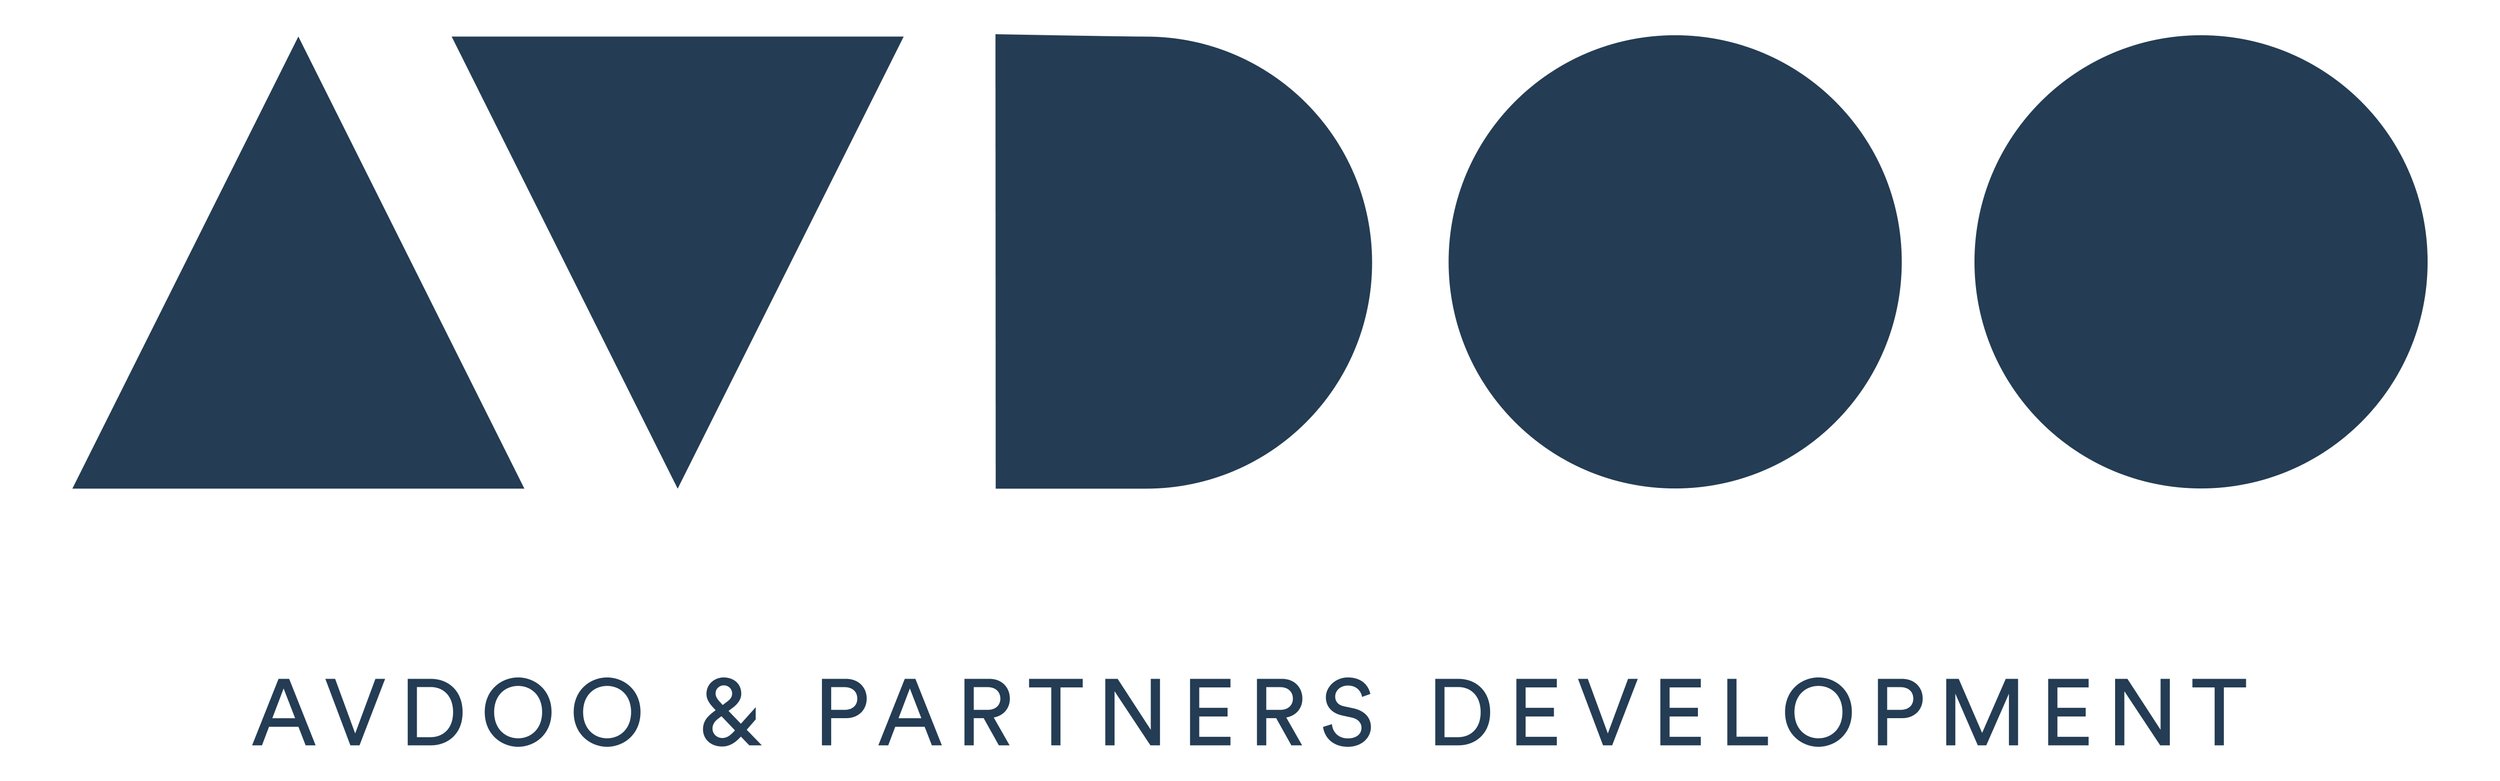 Avdoo & Partners Development